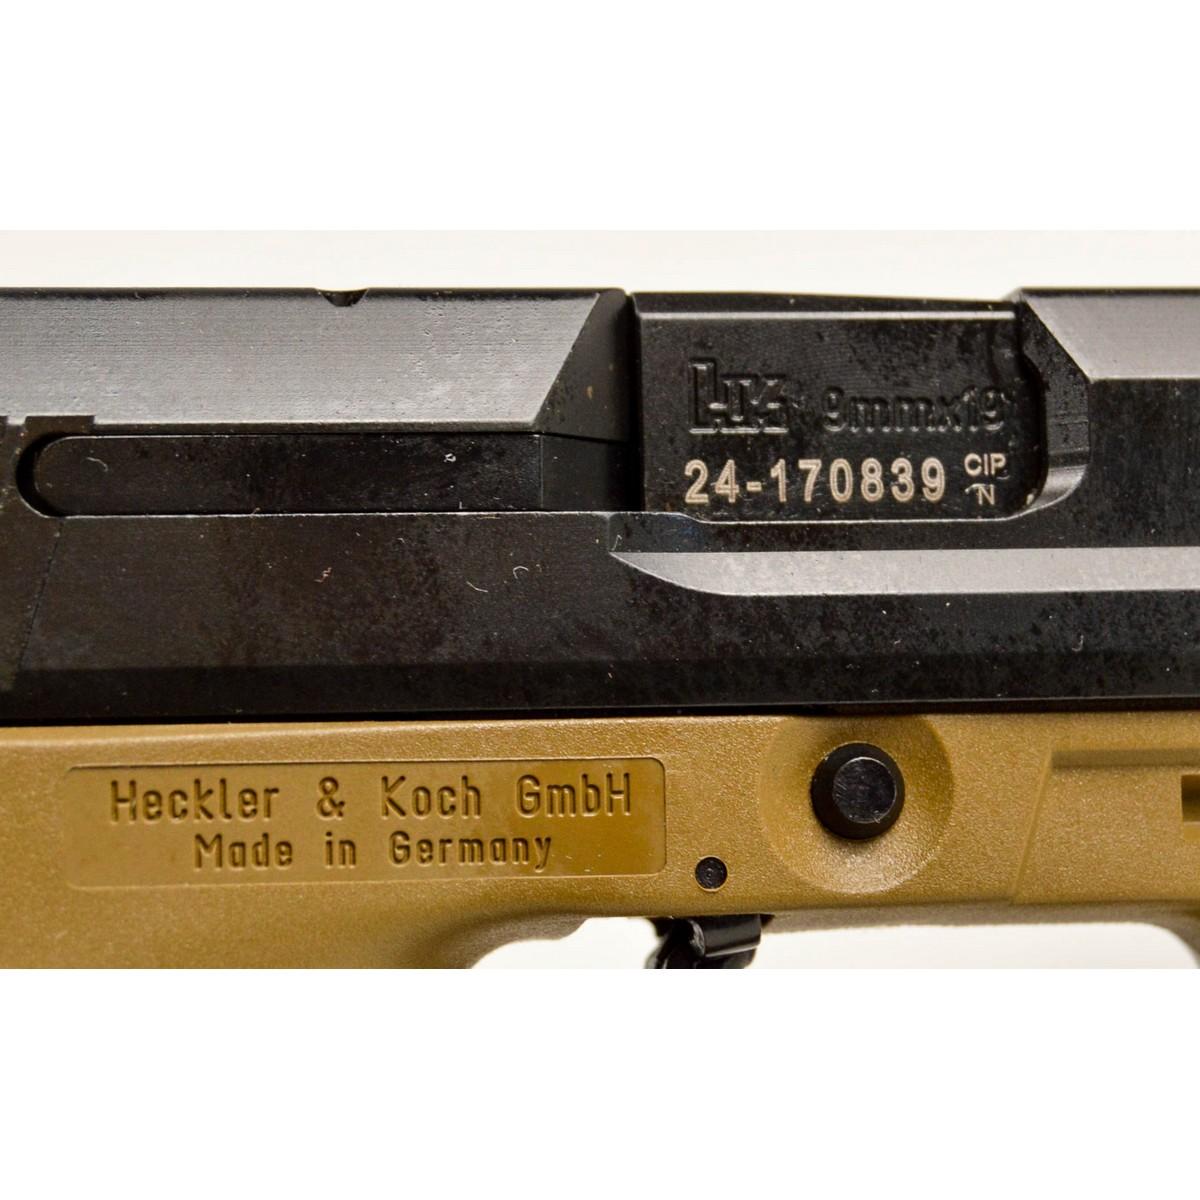 Heckler & Koch USP 9mm Pistol